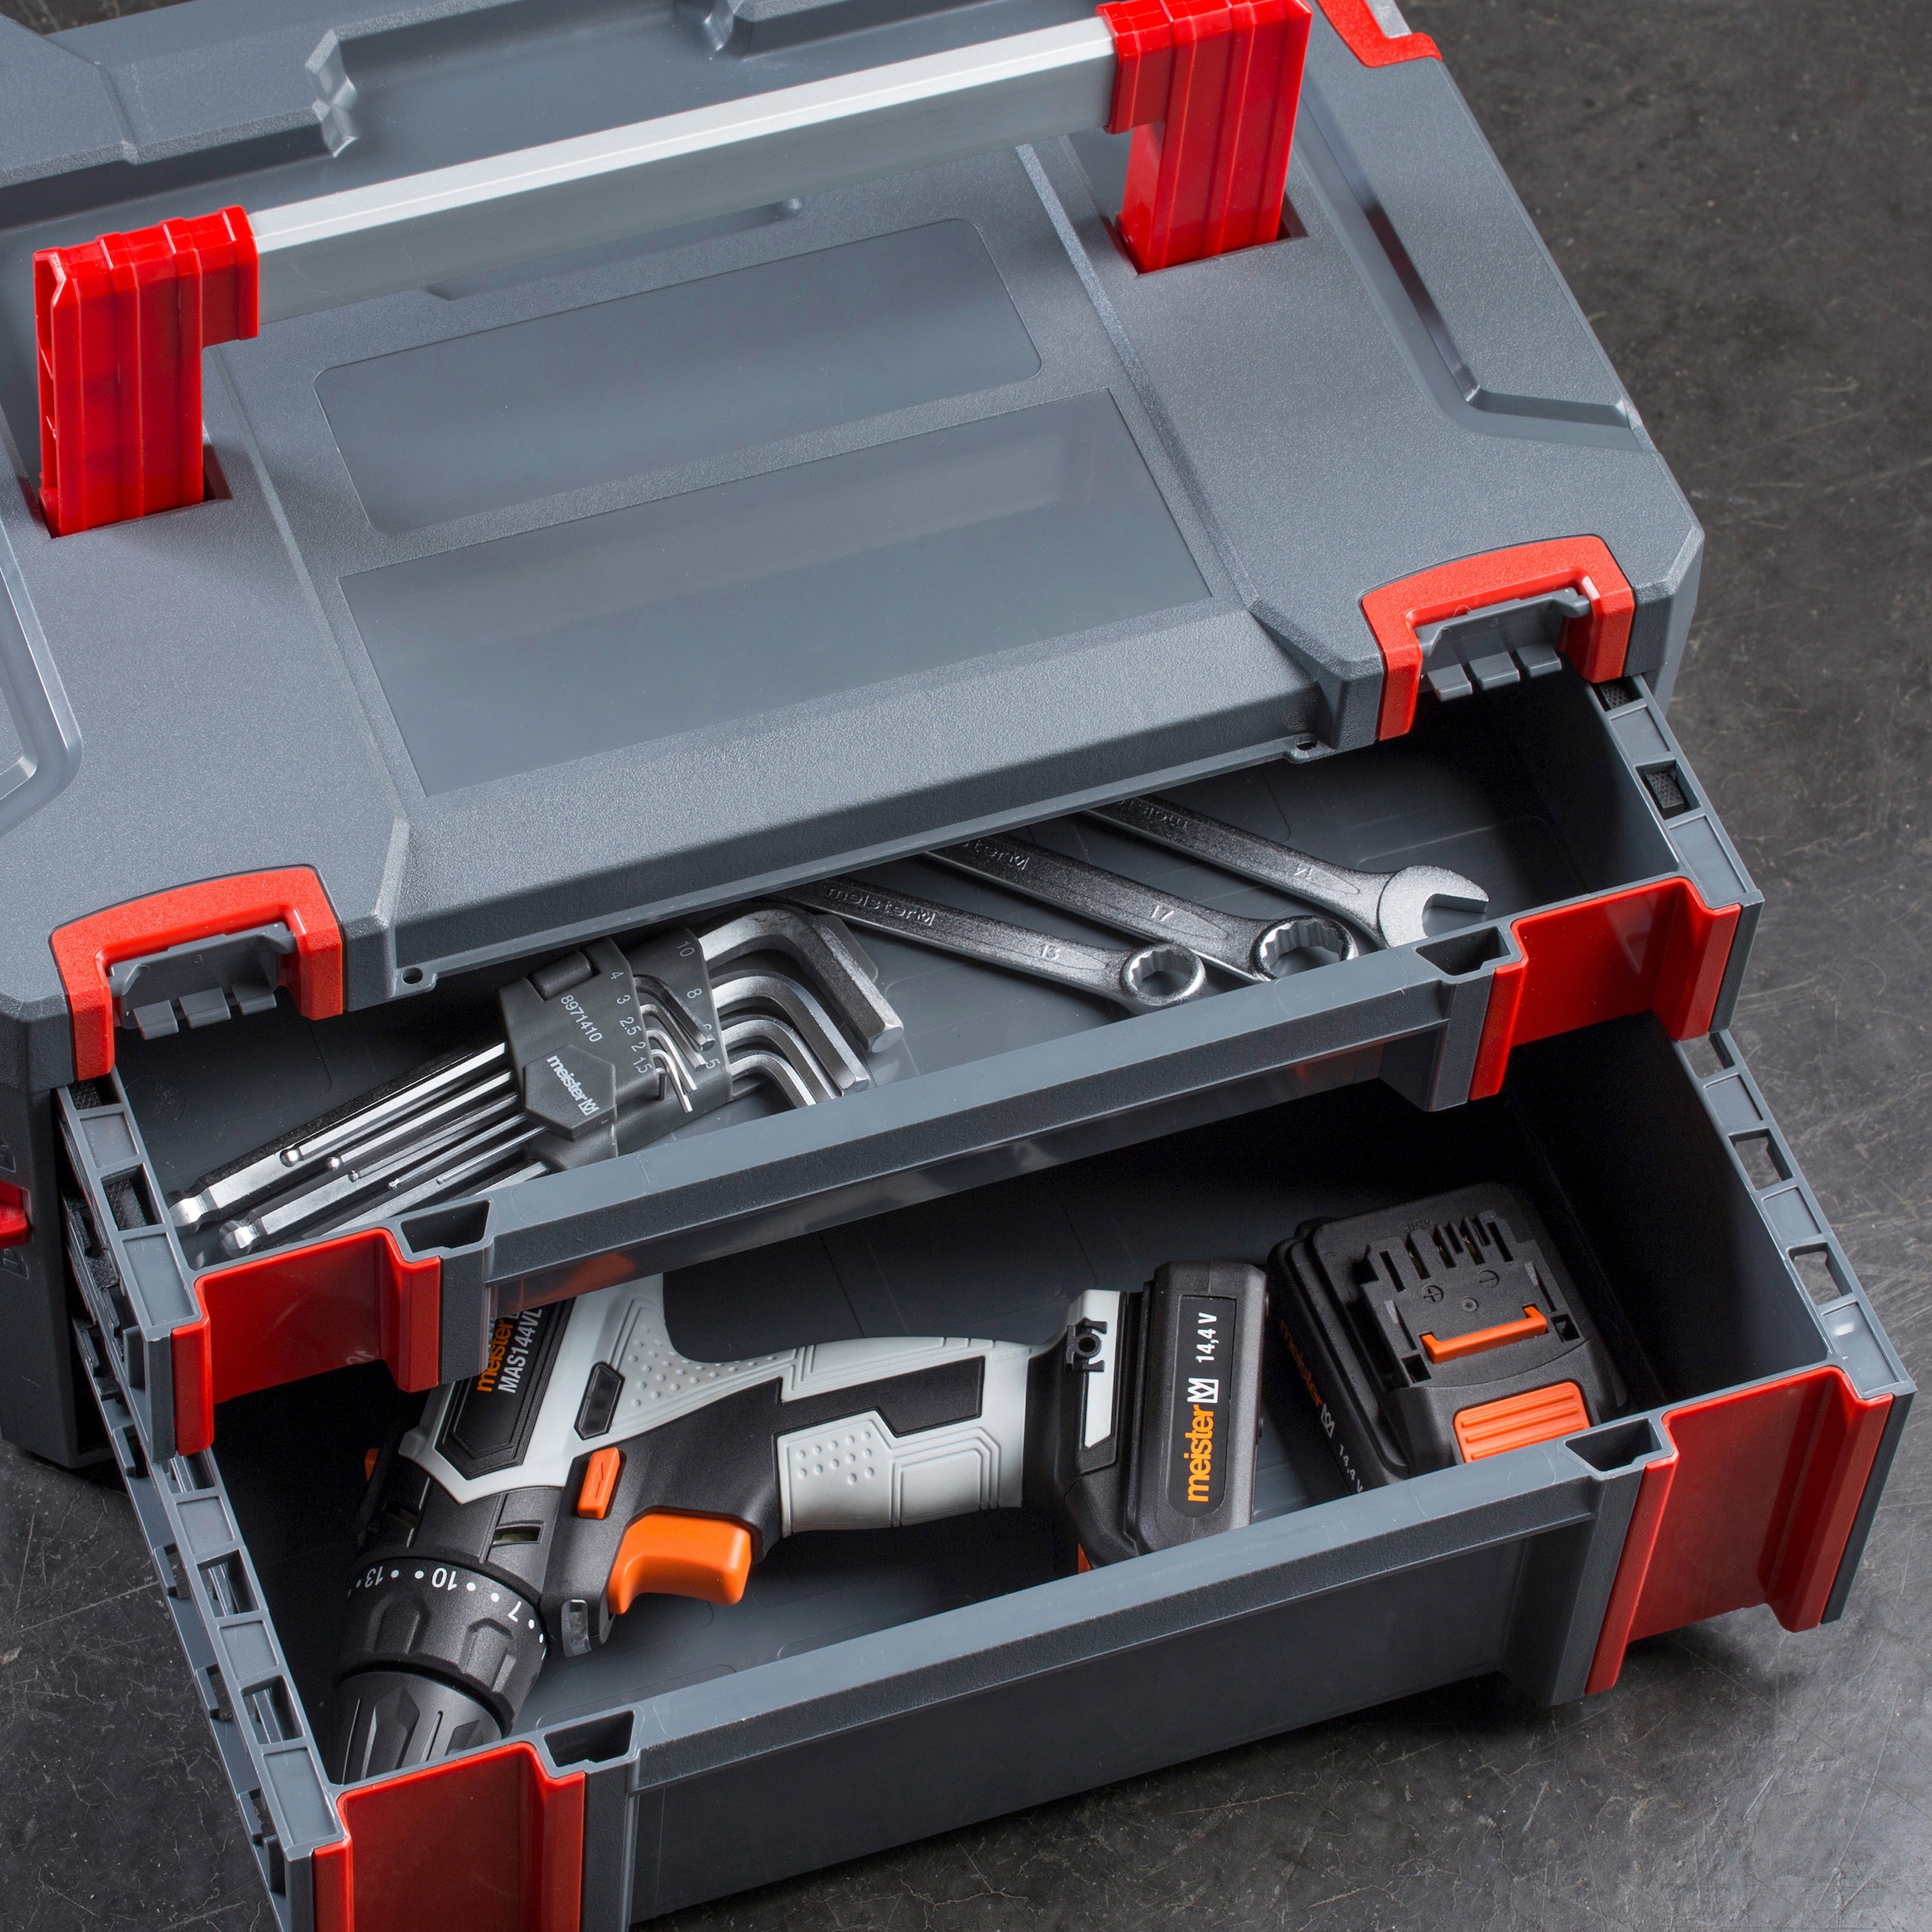 Werkzeug Set slimVario® electric gemischt 32-tlg. inkl. Funktionstasche  (43465), Werkzeugtaschen, Werkzeug Sets